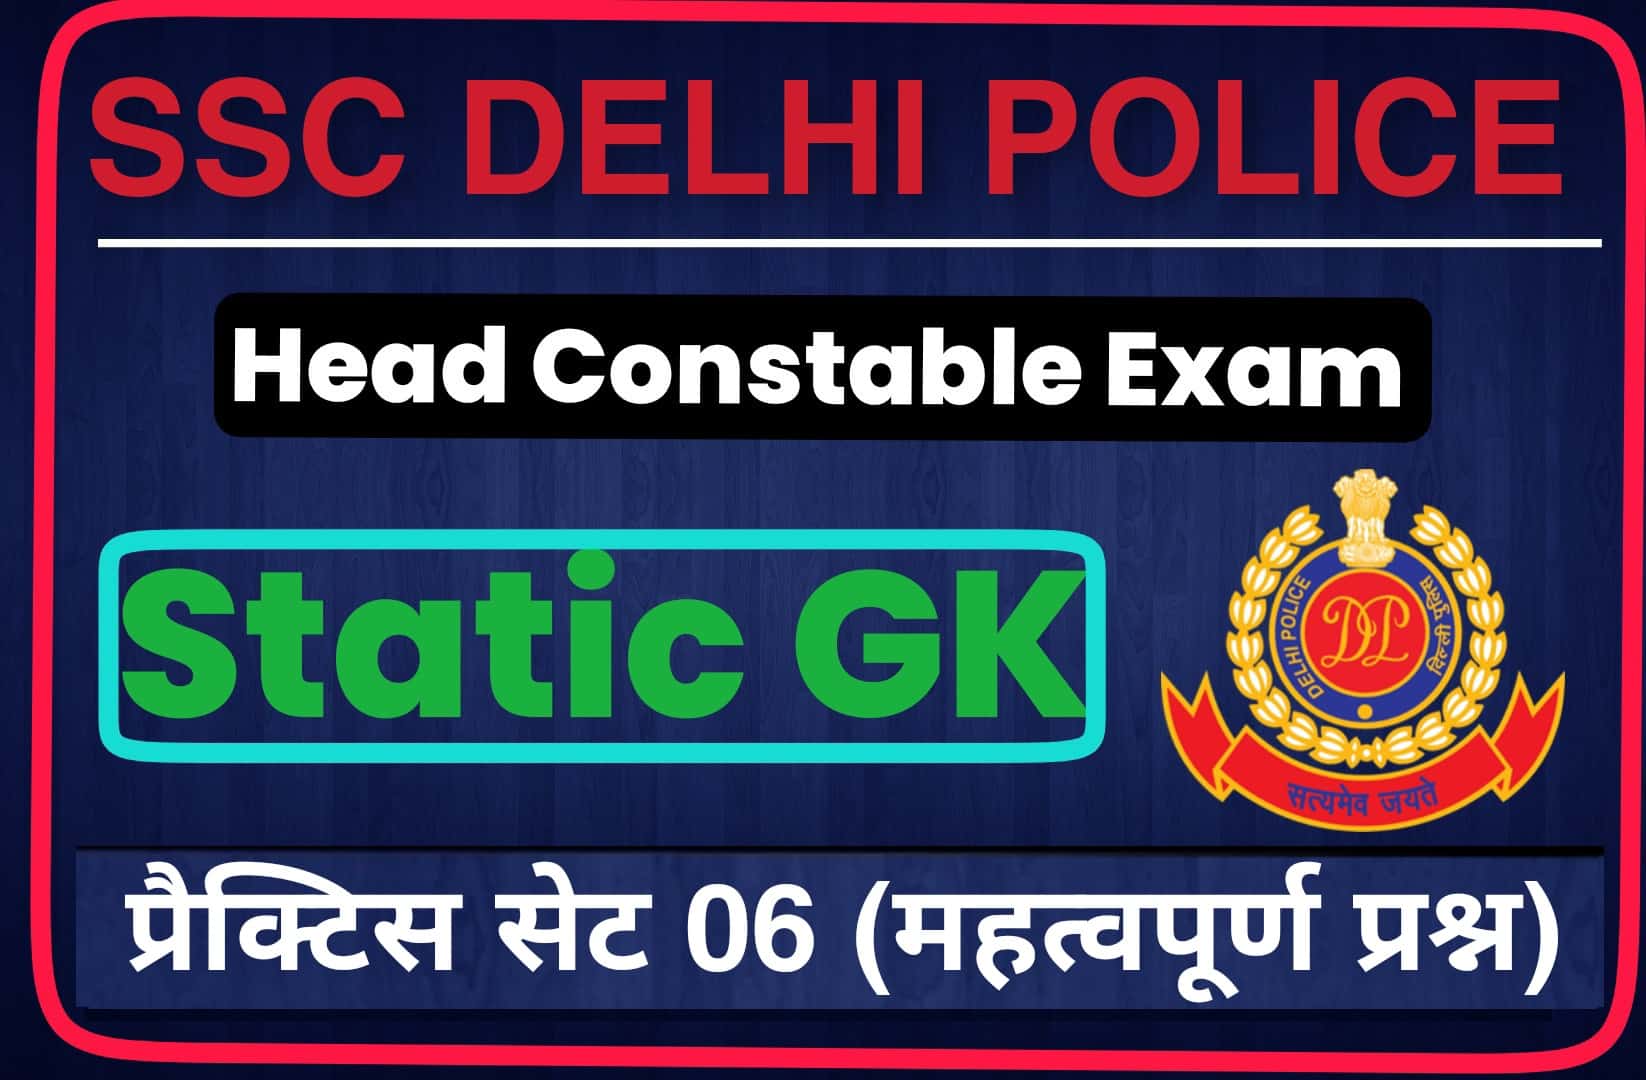 SSC Delhi Police Head Constable Static GK Practice Set 06 | परीक्षा में अवश्य पढ़कर जाये यें महत्वपूर्ण प्रश्न